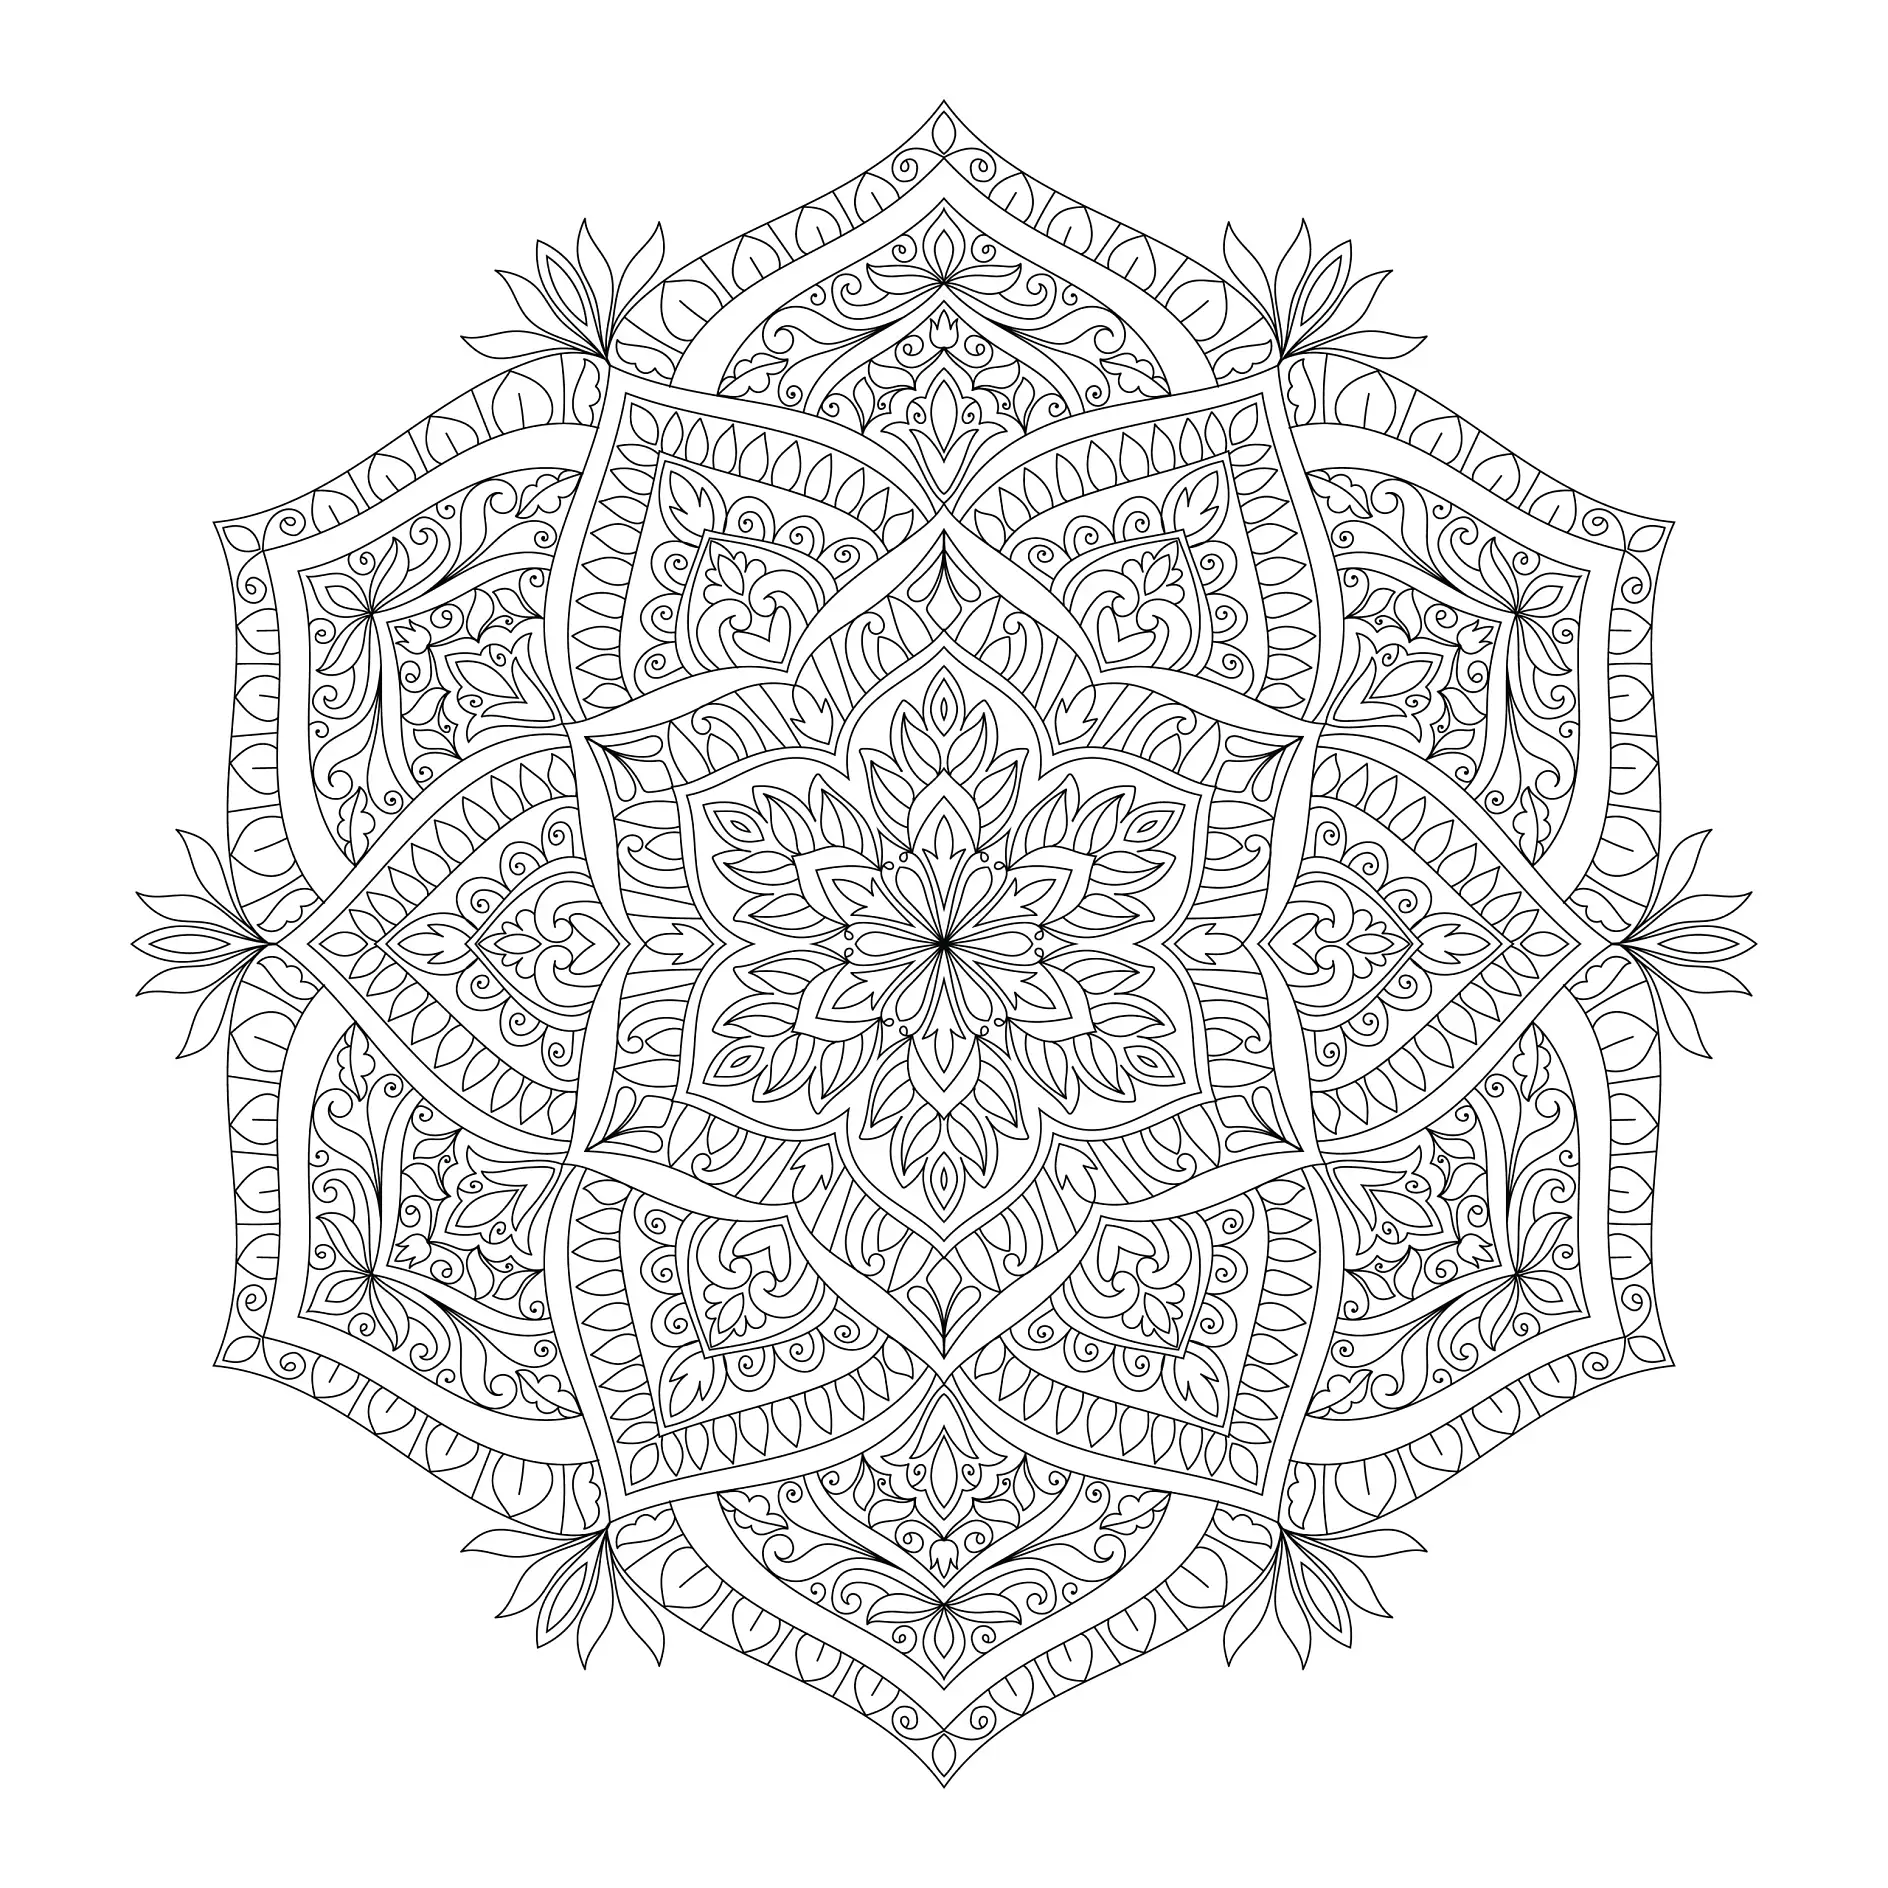 Ausmalbild Mandala mit symmetrischen Mustern und floralen Elementen